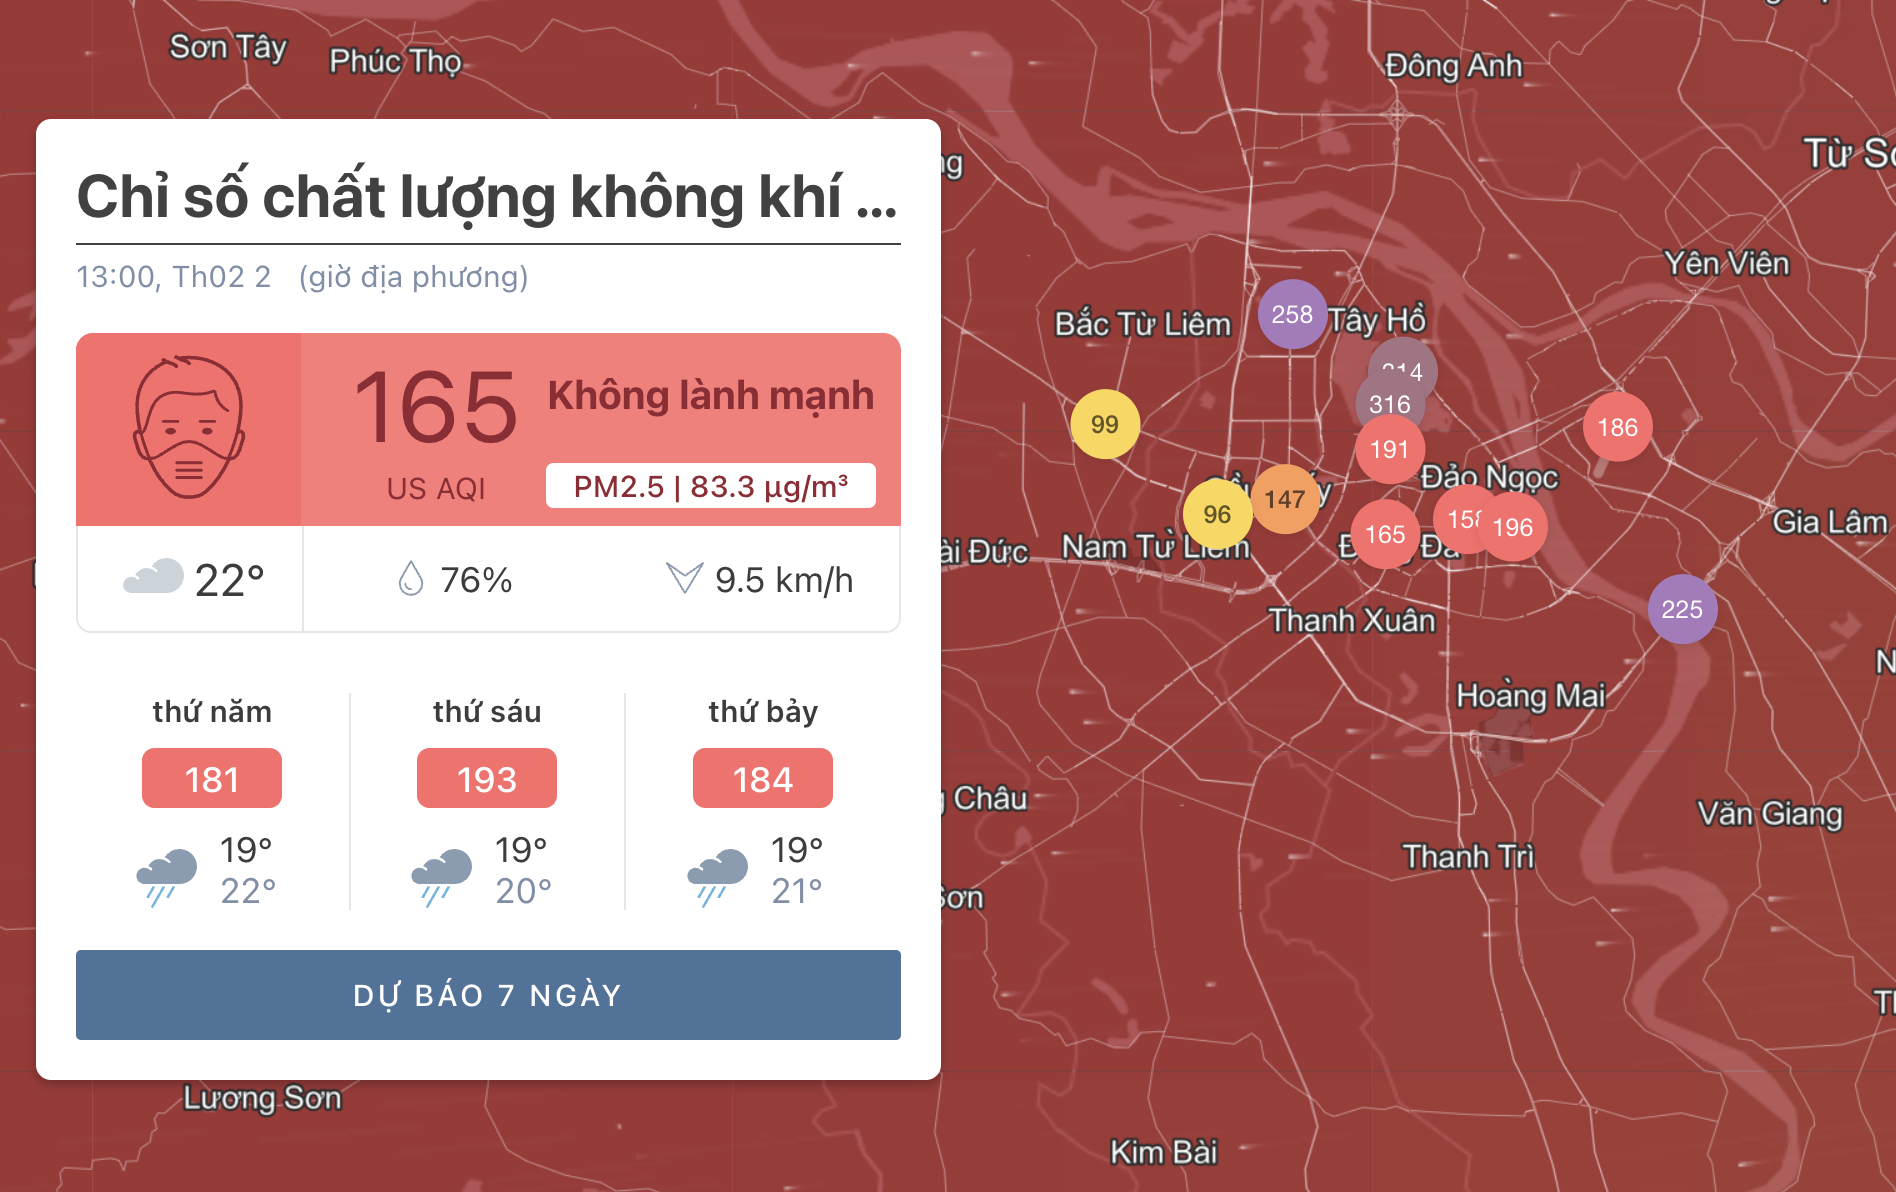 Tham khảo ứng dụng IQ Air, chỉ số chất lượng chất lượng không khí tại Hà Nội khoảng 163 hiển thị màu đỏ - tức mức có hại cho sức khỏe con người.